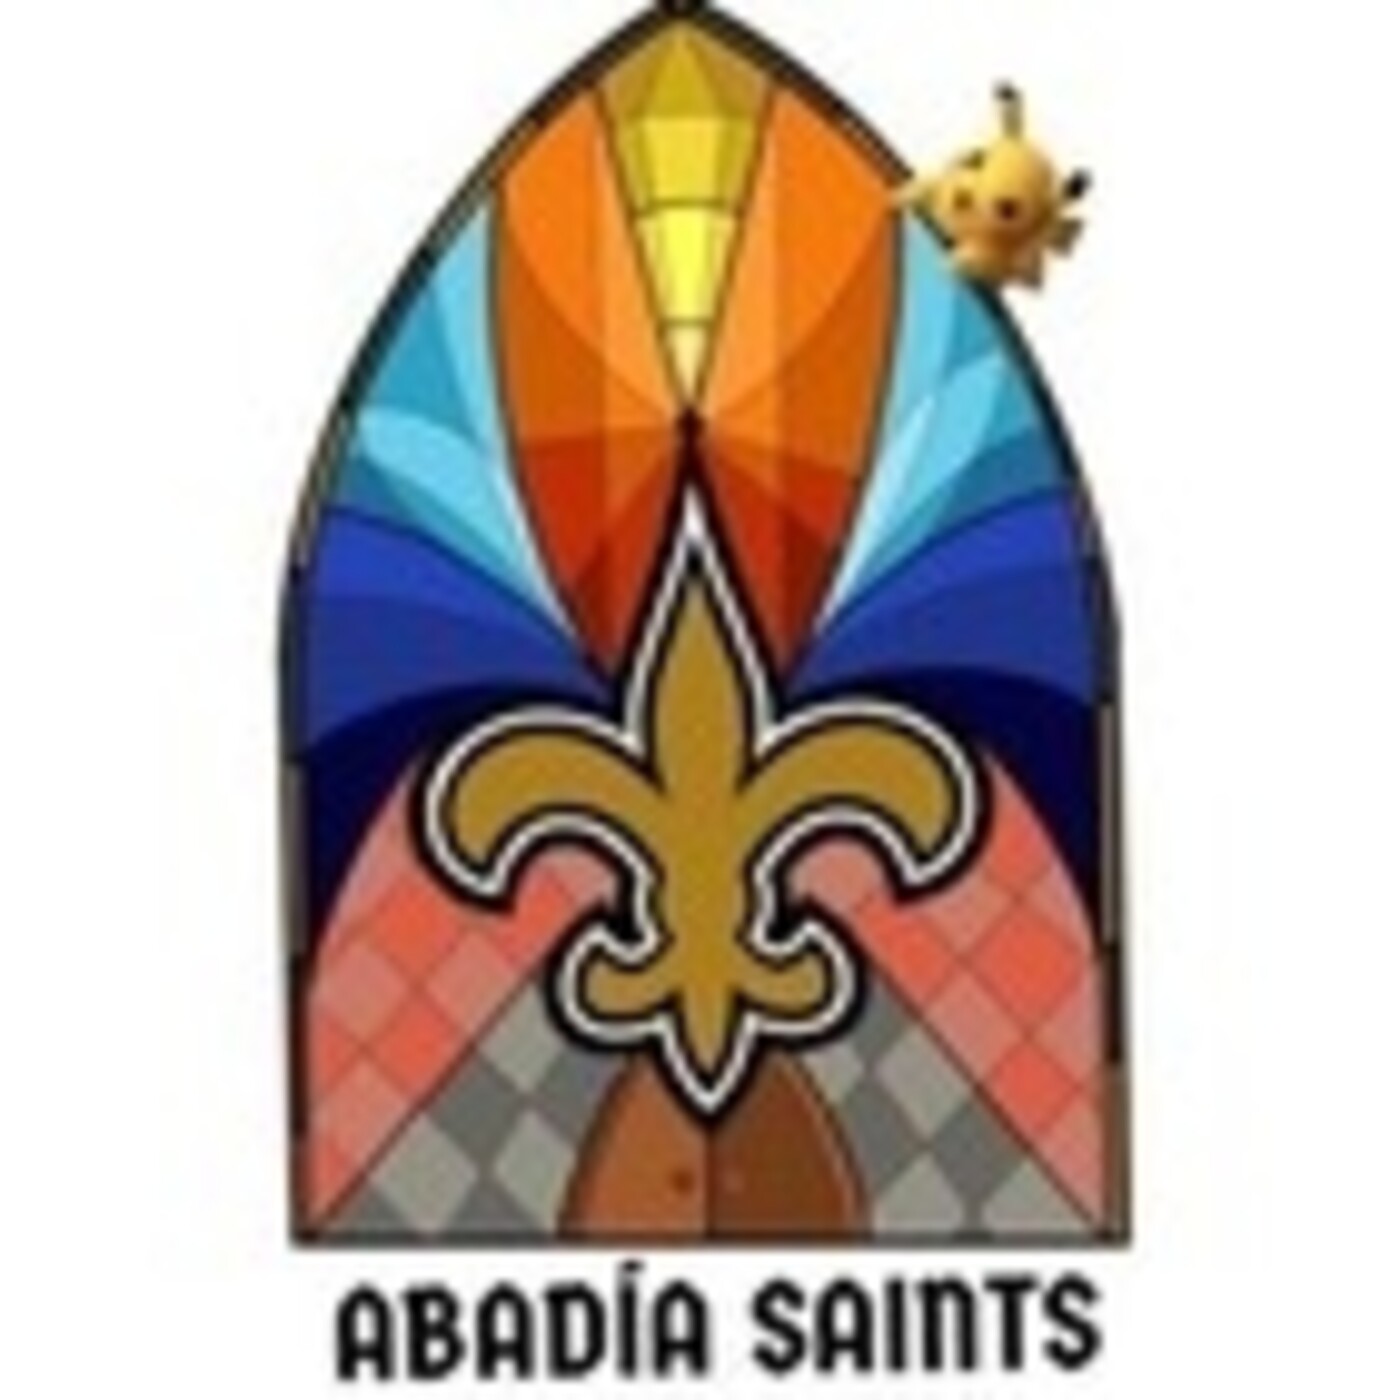 La Abadía Saints 2.0 - Programa 86 - Se acabó lo que se daba